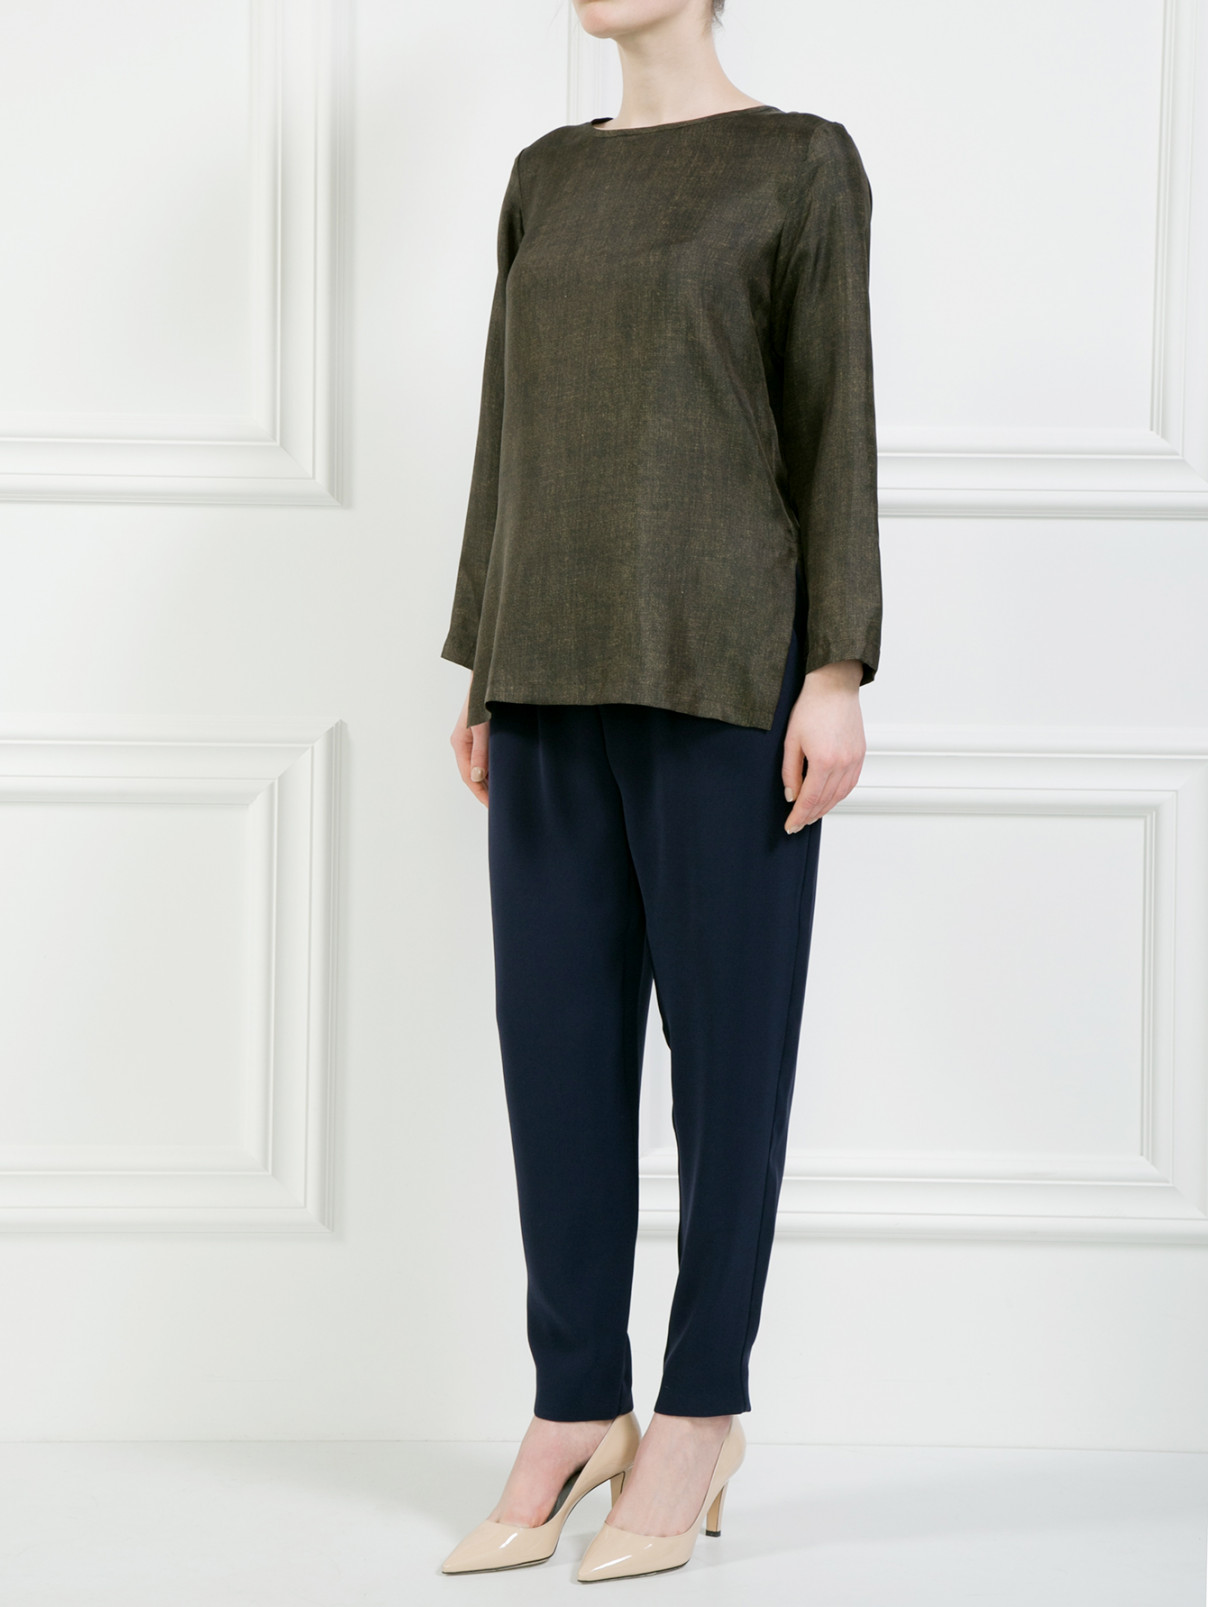 Шелковая блуза свободного кроя Max Mara  –  Модель Общий вид  – Цвет:  Зеленый